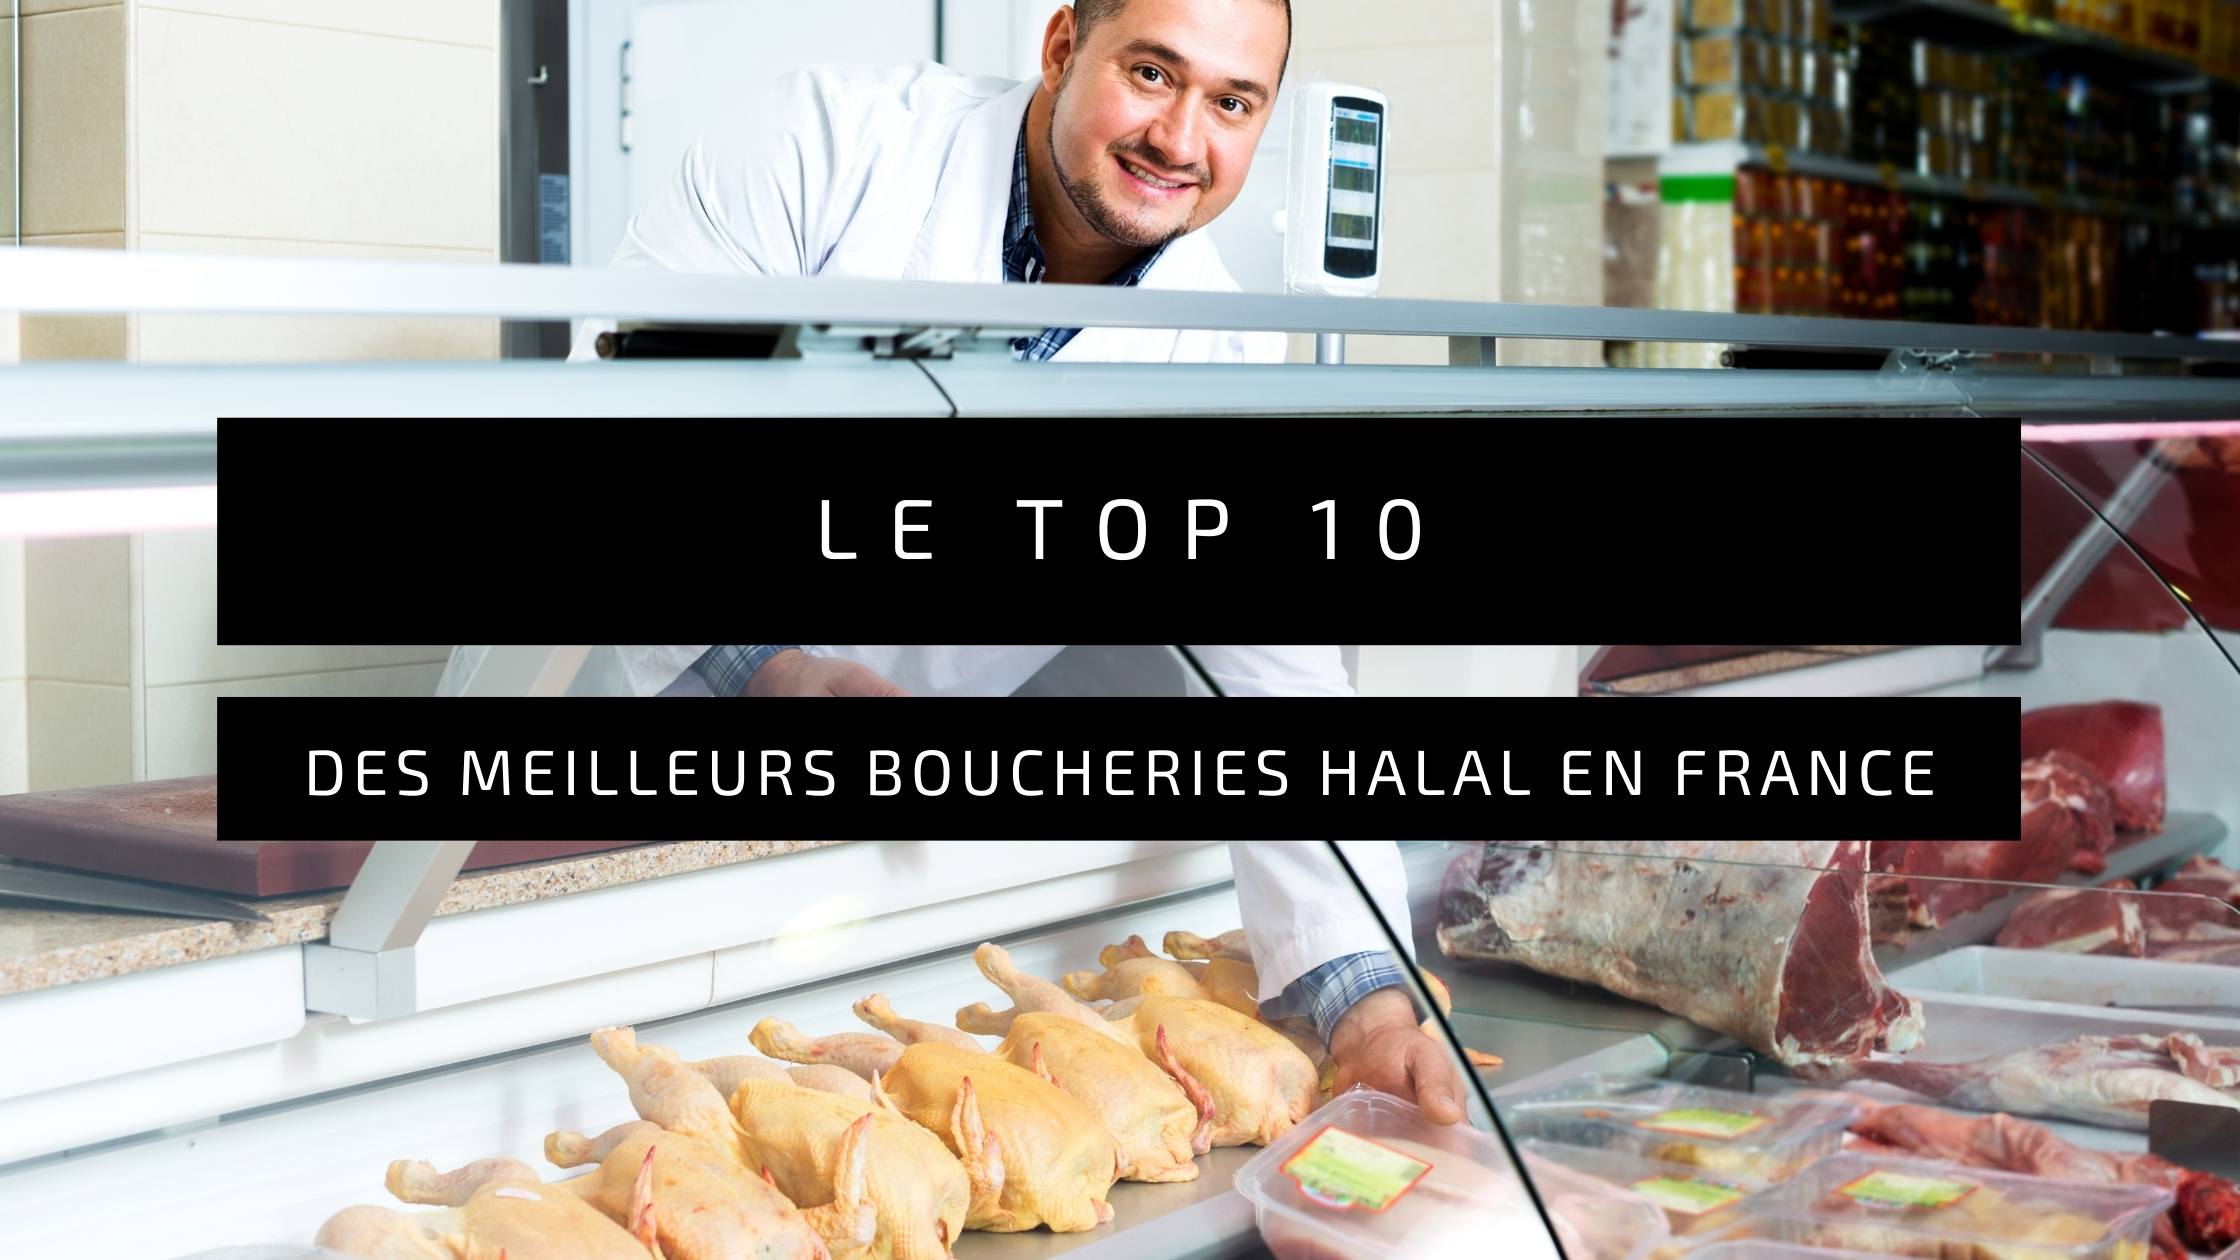 Les Meilleures Boucheries Halal de France